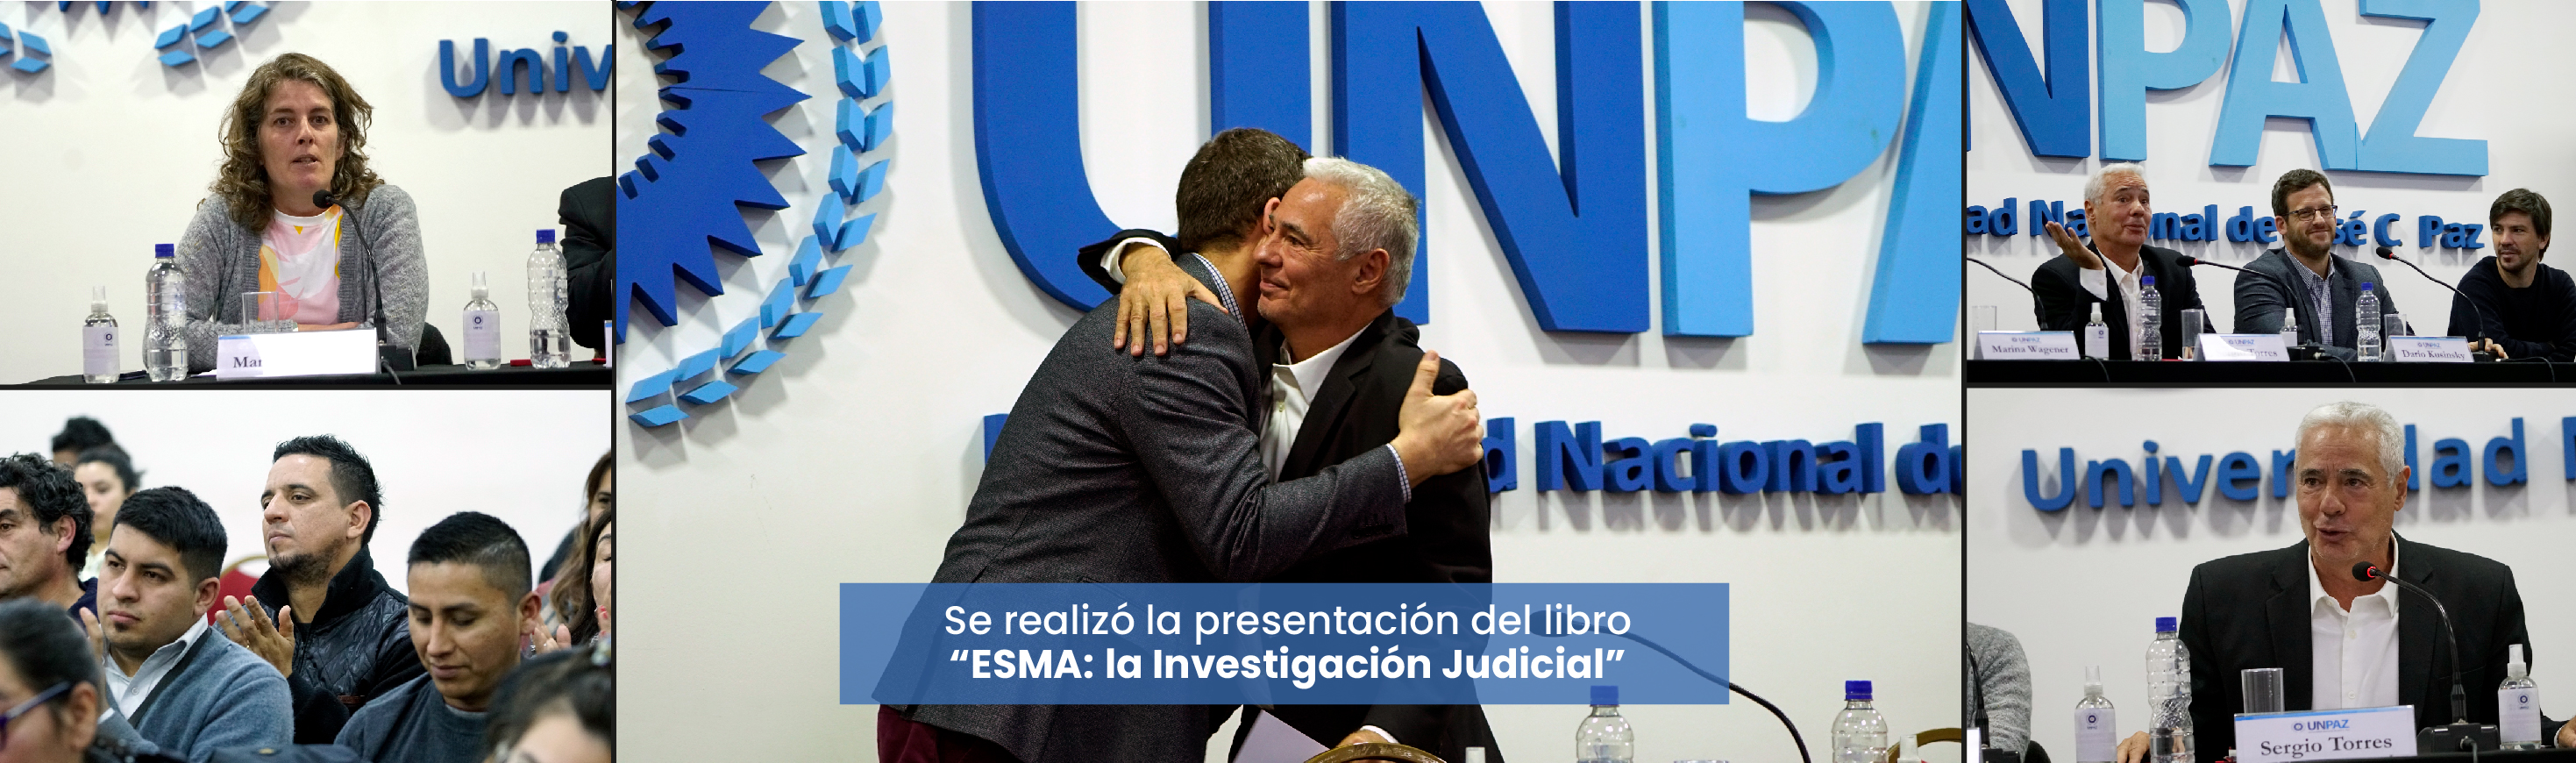 Se realizó la presentación del libro “ESMA: la Investigación Judicial”